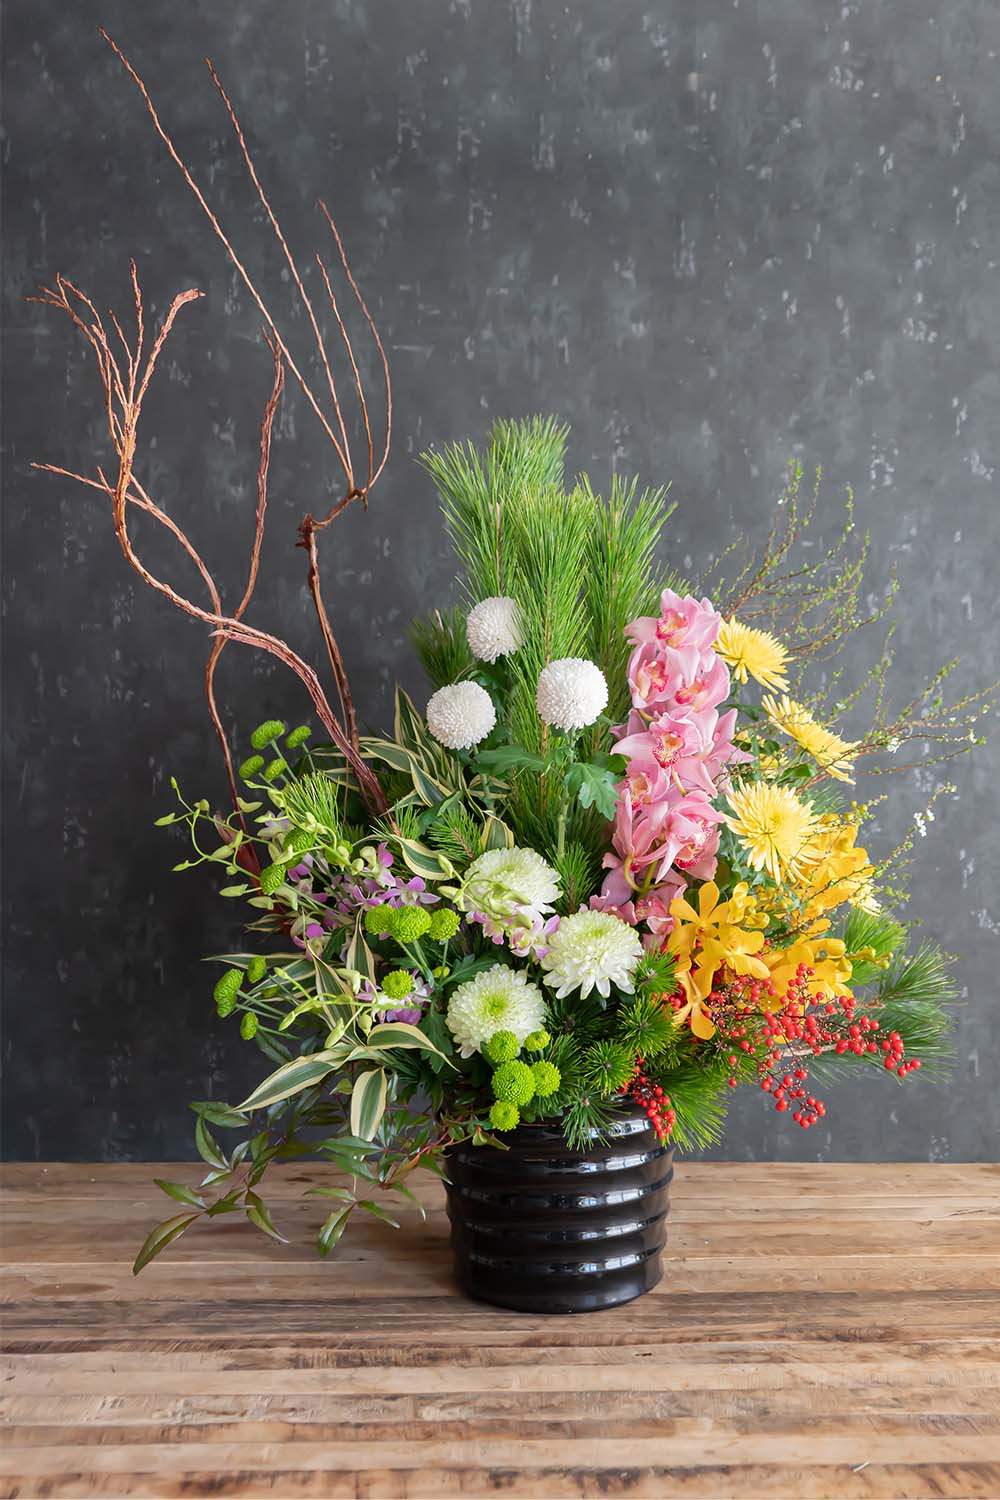 季節 記念日 お祝い お供えの花通販ギフトは送料無料の お花の窓口 へ